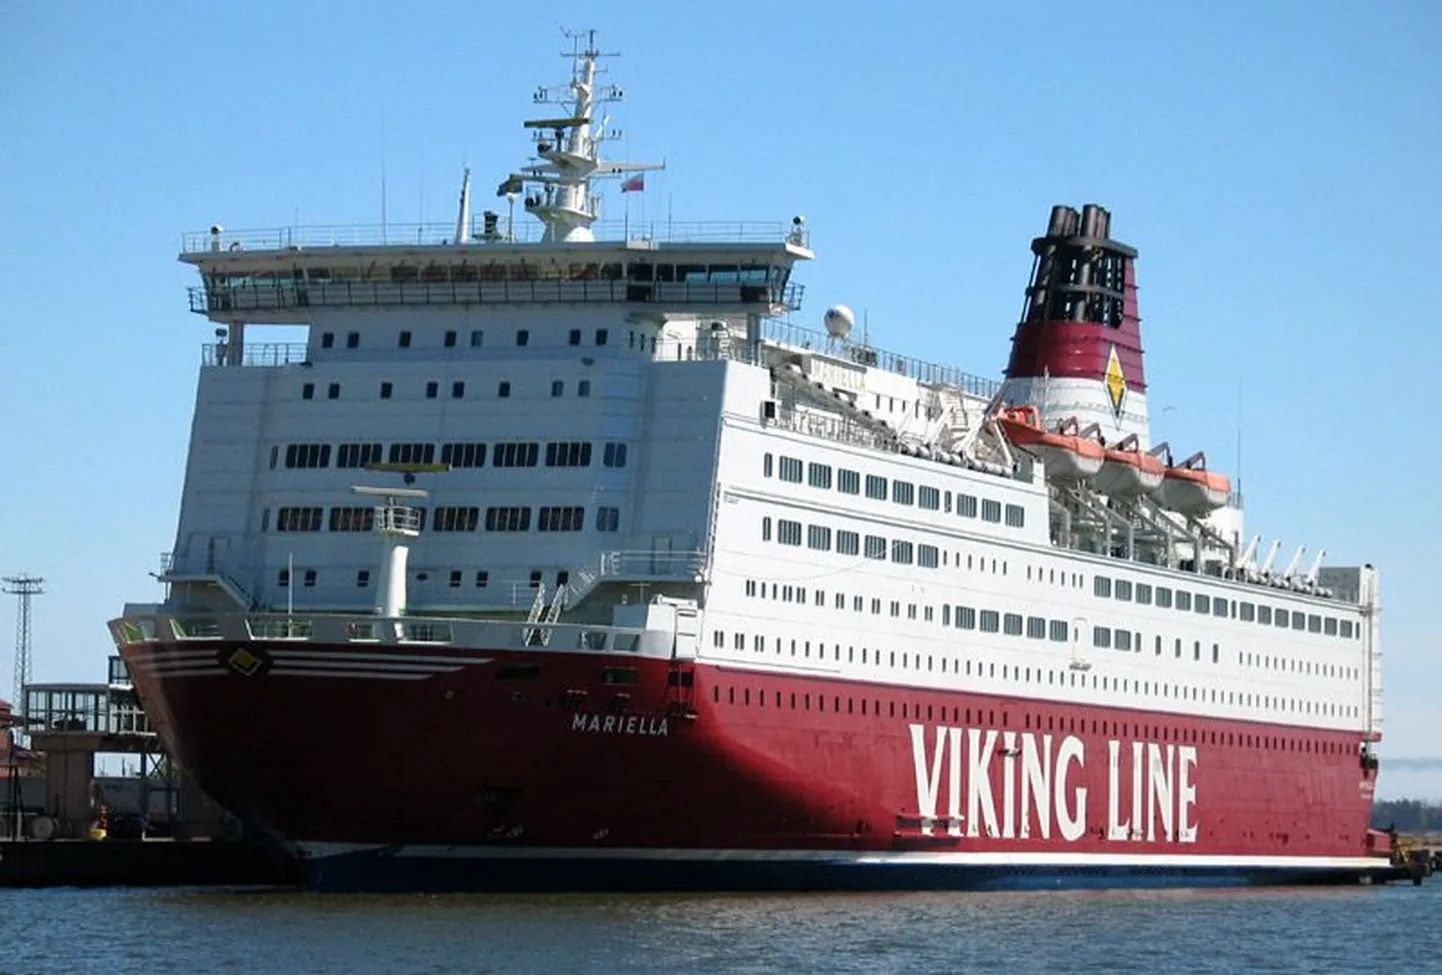 Viking Line'i Mariella, mis kurseerib liinil Stockholm-Mariehamn-Helsingi.